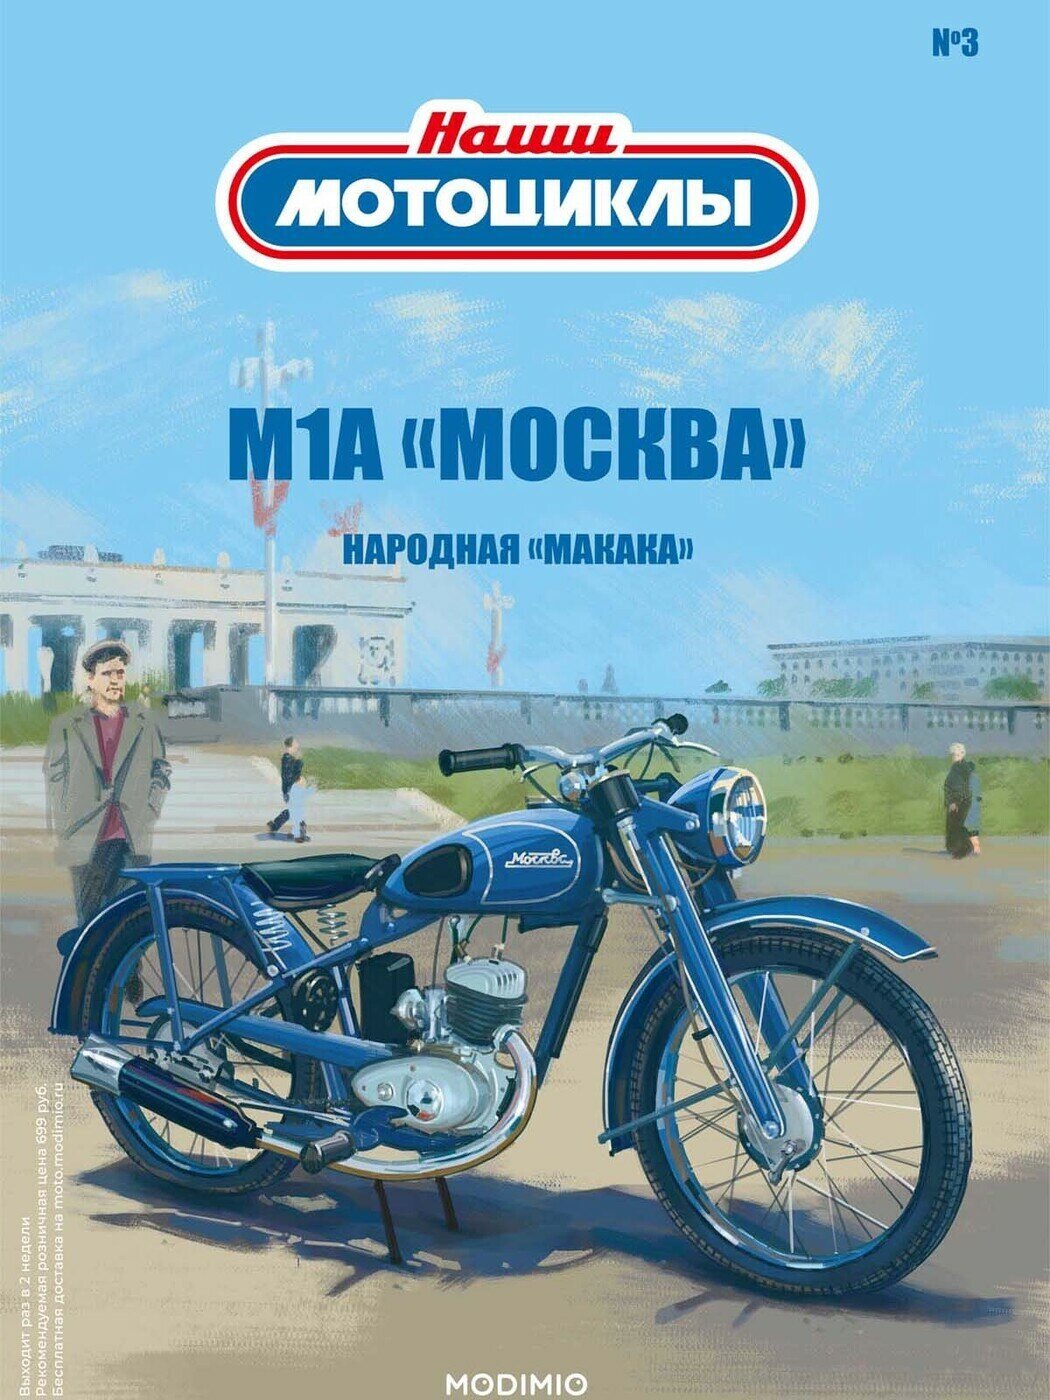 Журнал коллекционный с вложением. Модель мотоцикла. Масштабная модель. Наши мотоциклы №3, М-1-А "Москва"